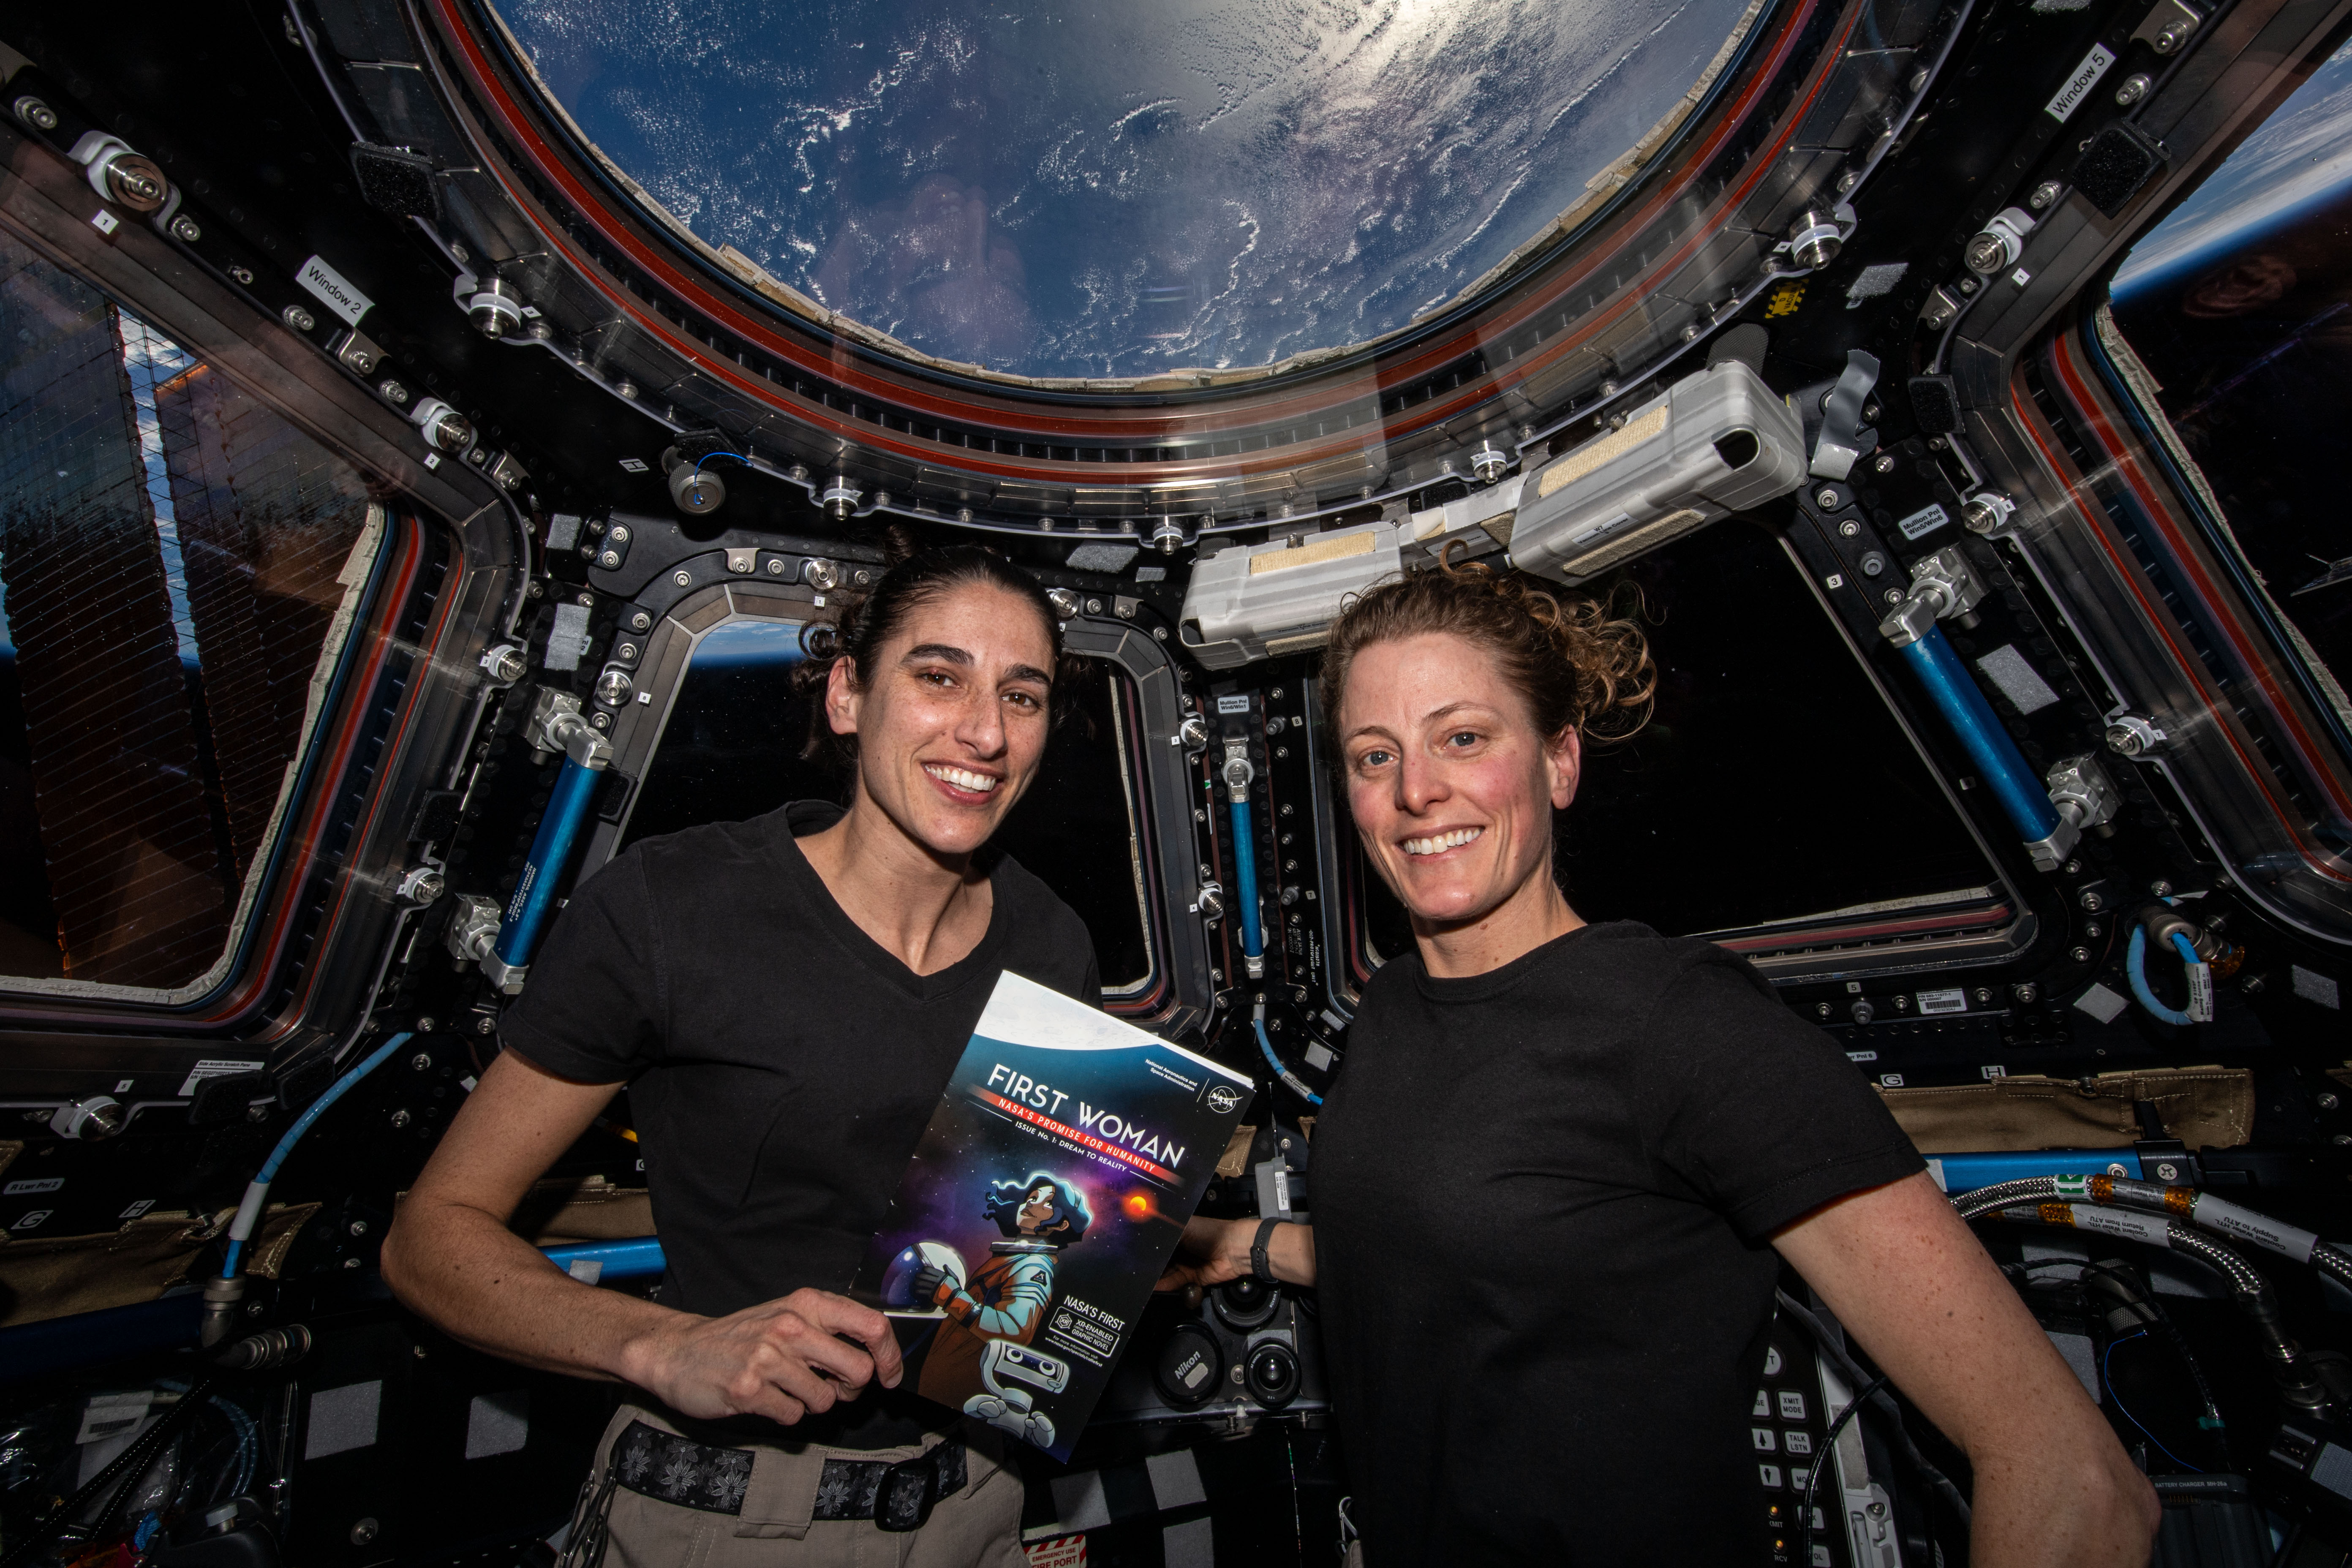 NASA Astronauts Jasmin Moghbeli and Loral O’Hara Read First Woman